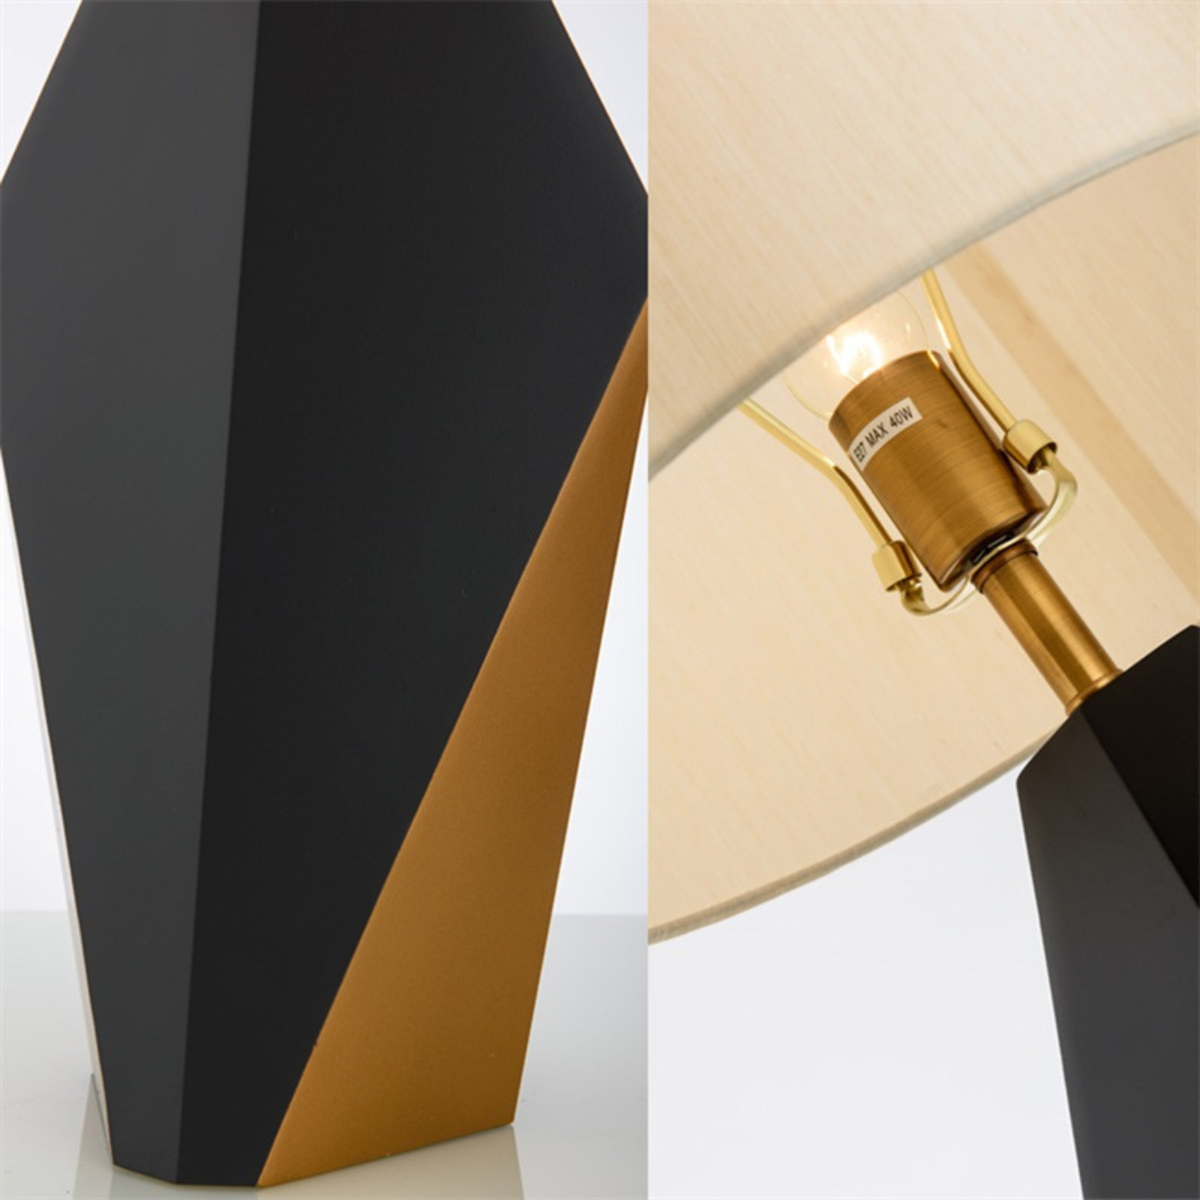 Oletalia-Geometric-Table-Lamp-2